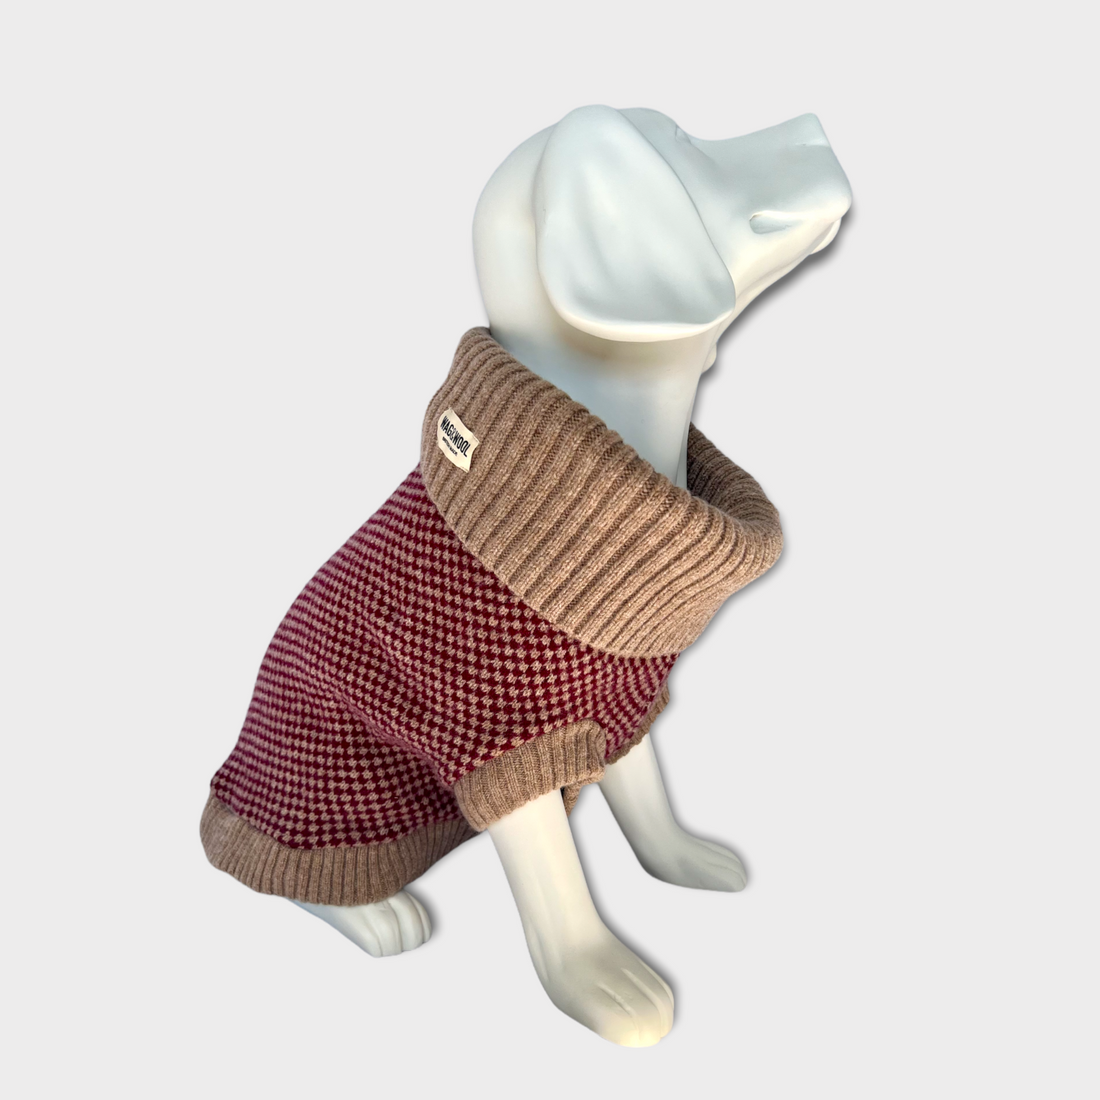 dog mannequin in a burgundy jumper